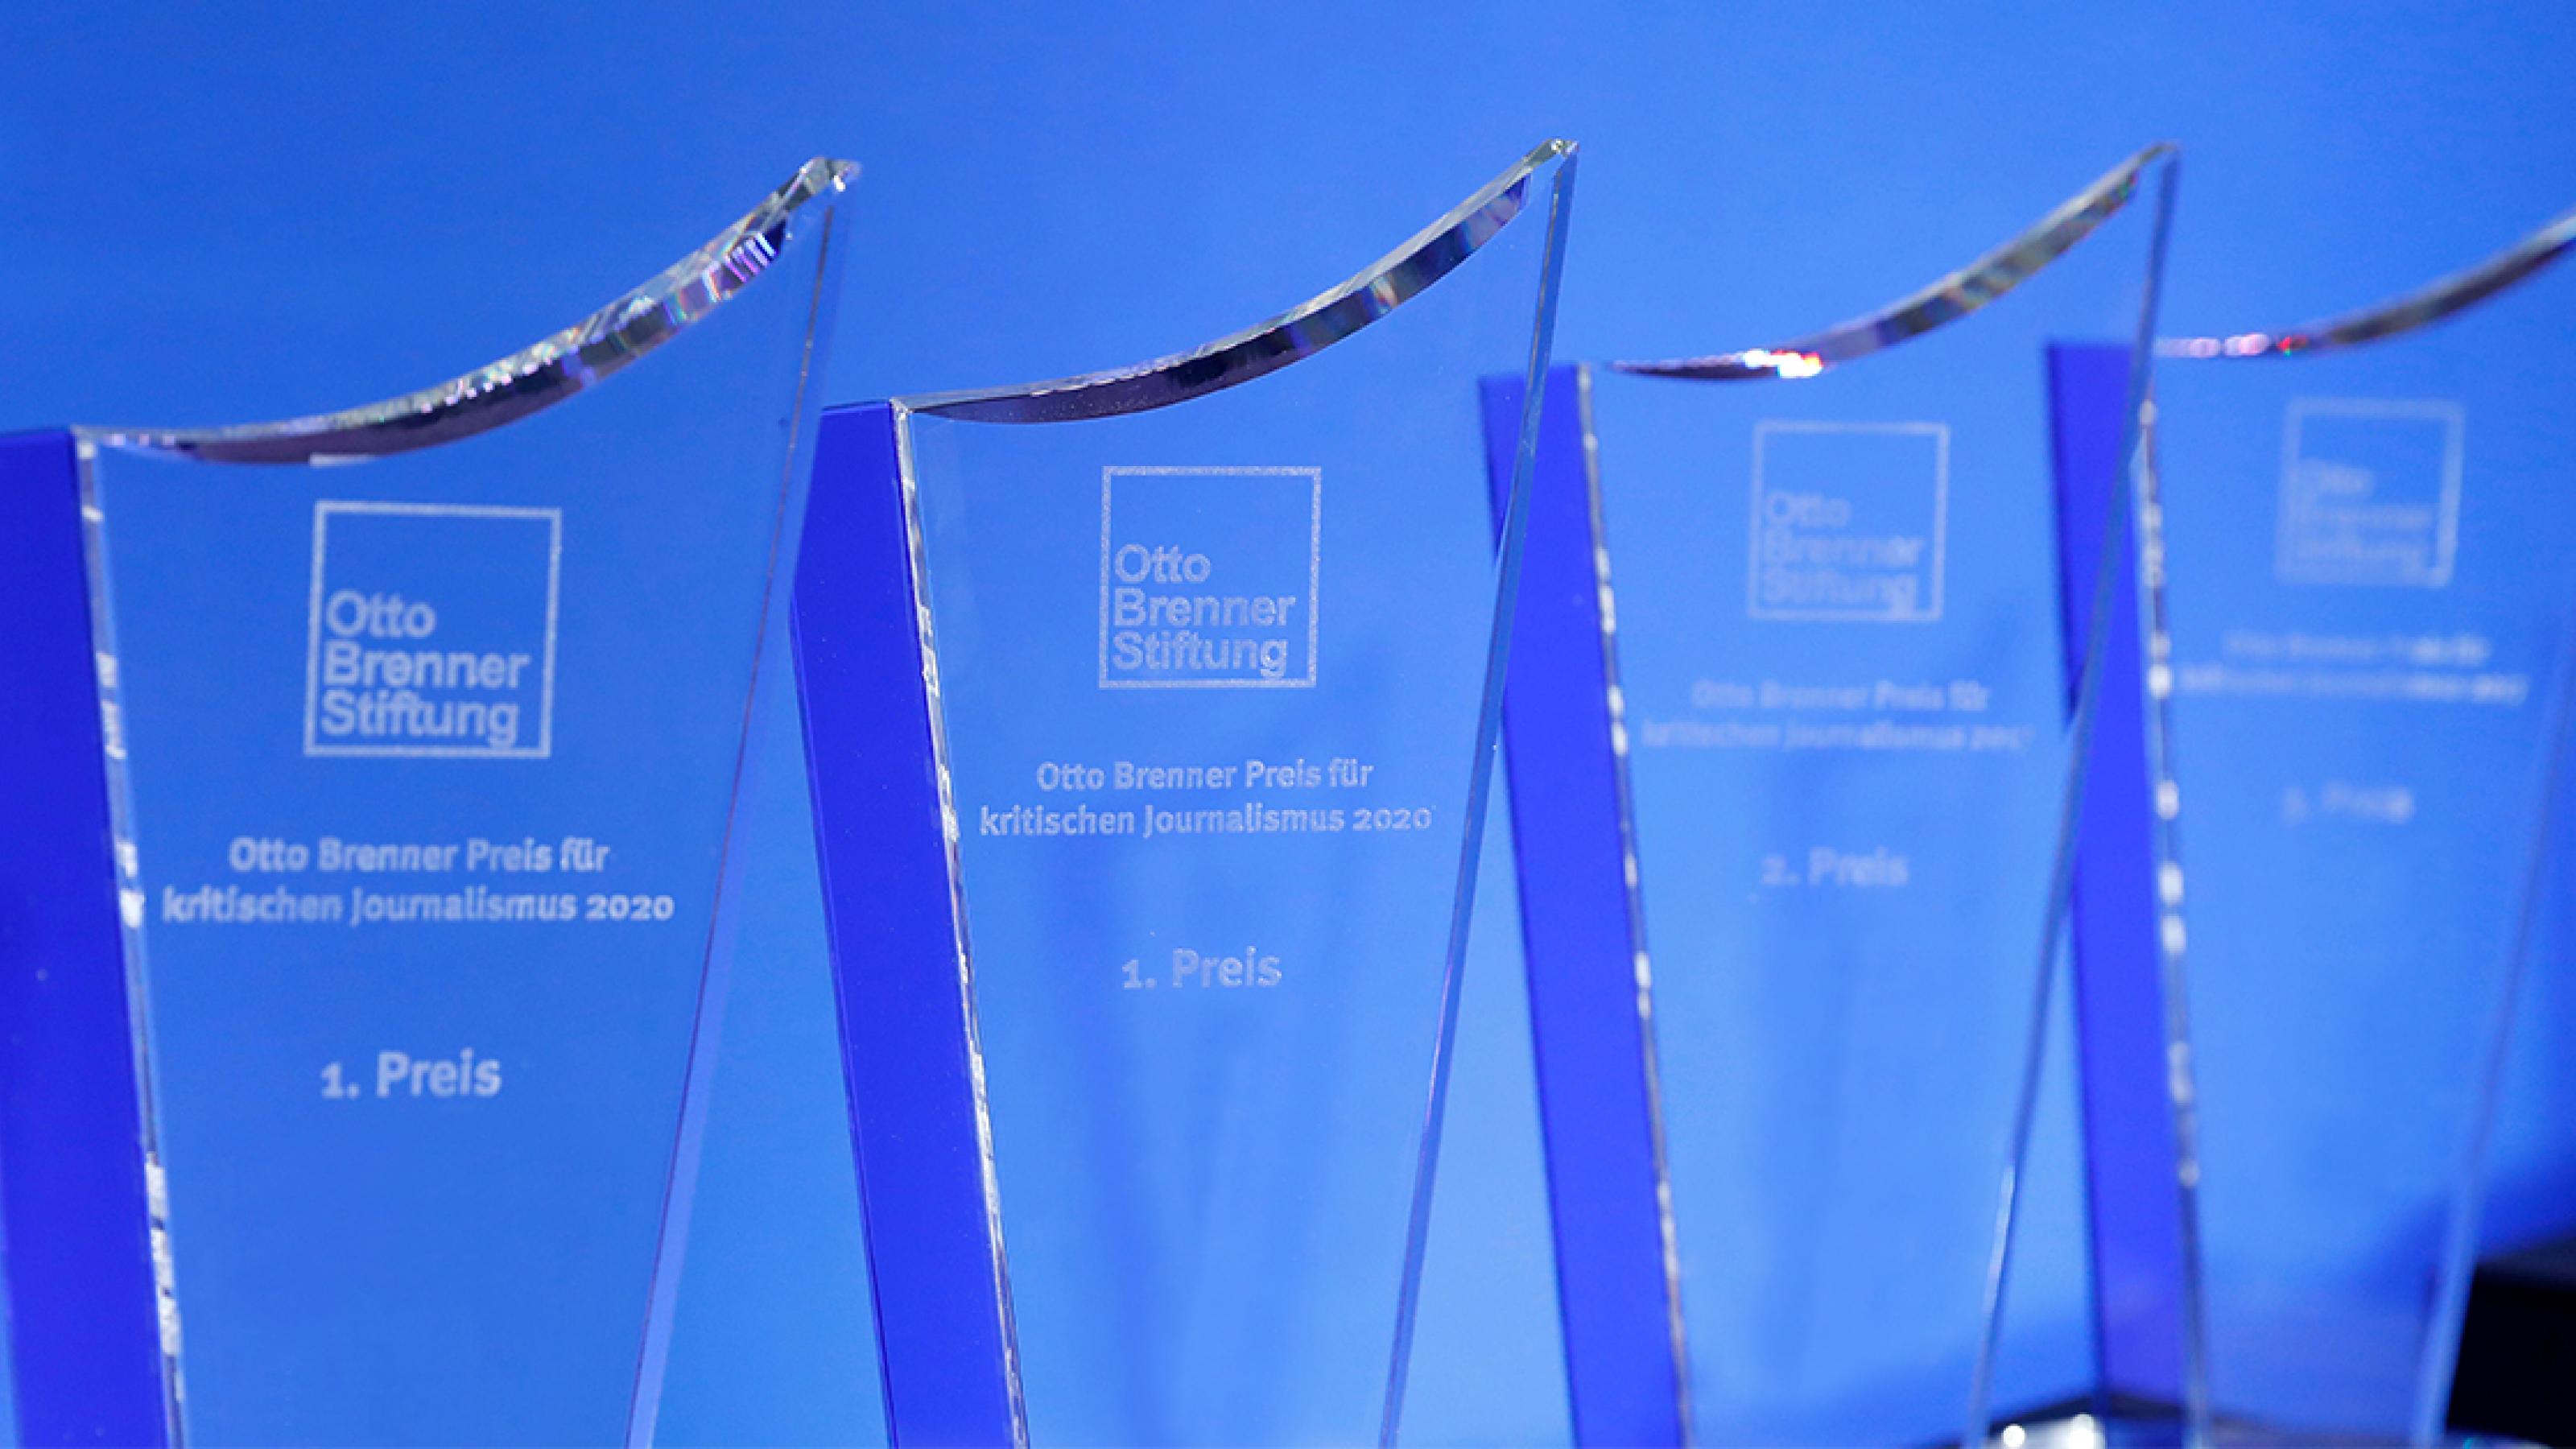 Mehrere Otto-Brenner-Preis-Trophäen aus Glas stehen vor einem blauen Hintergrund.